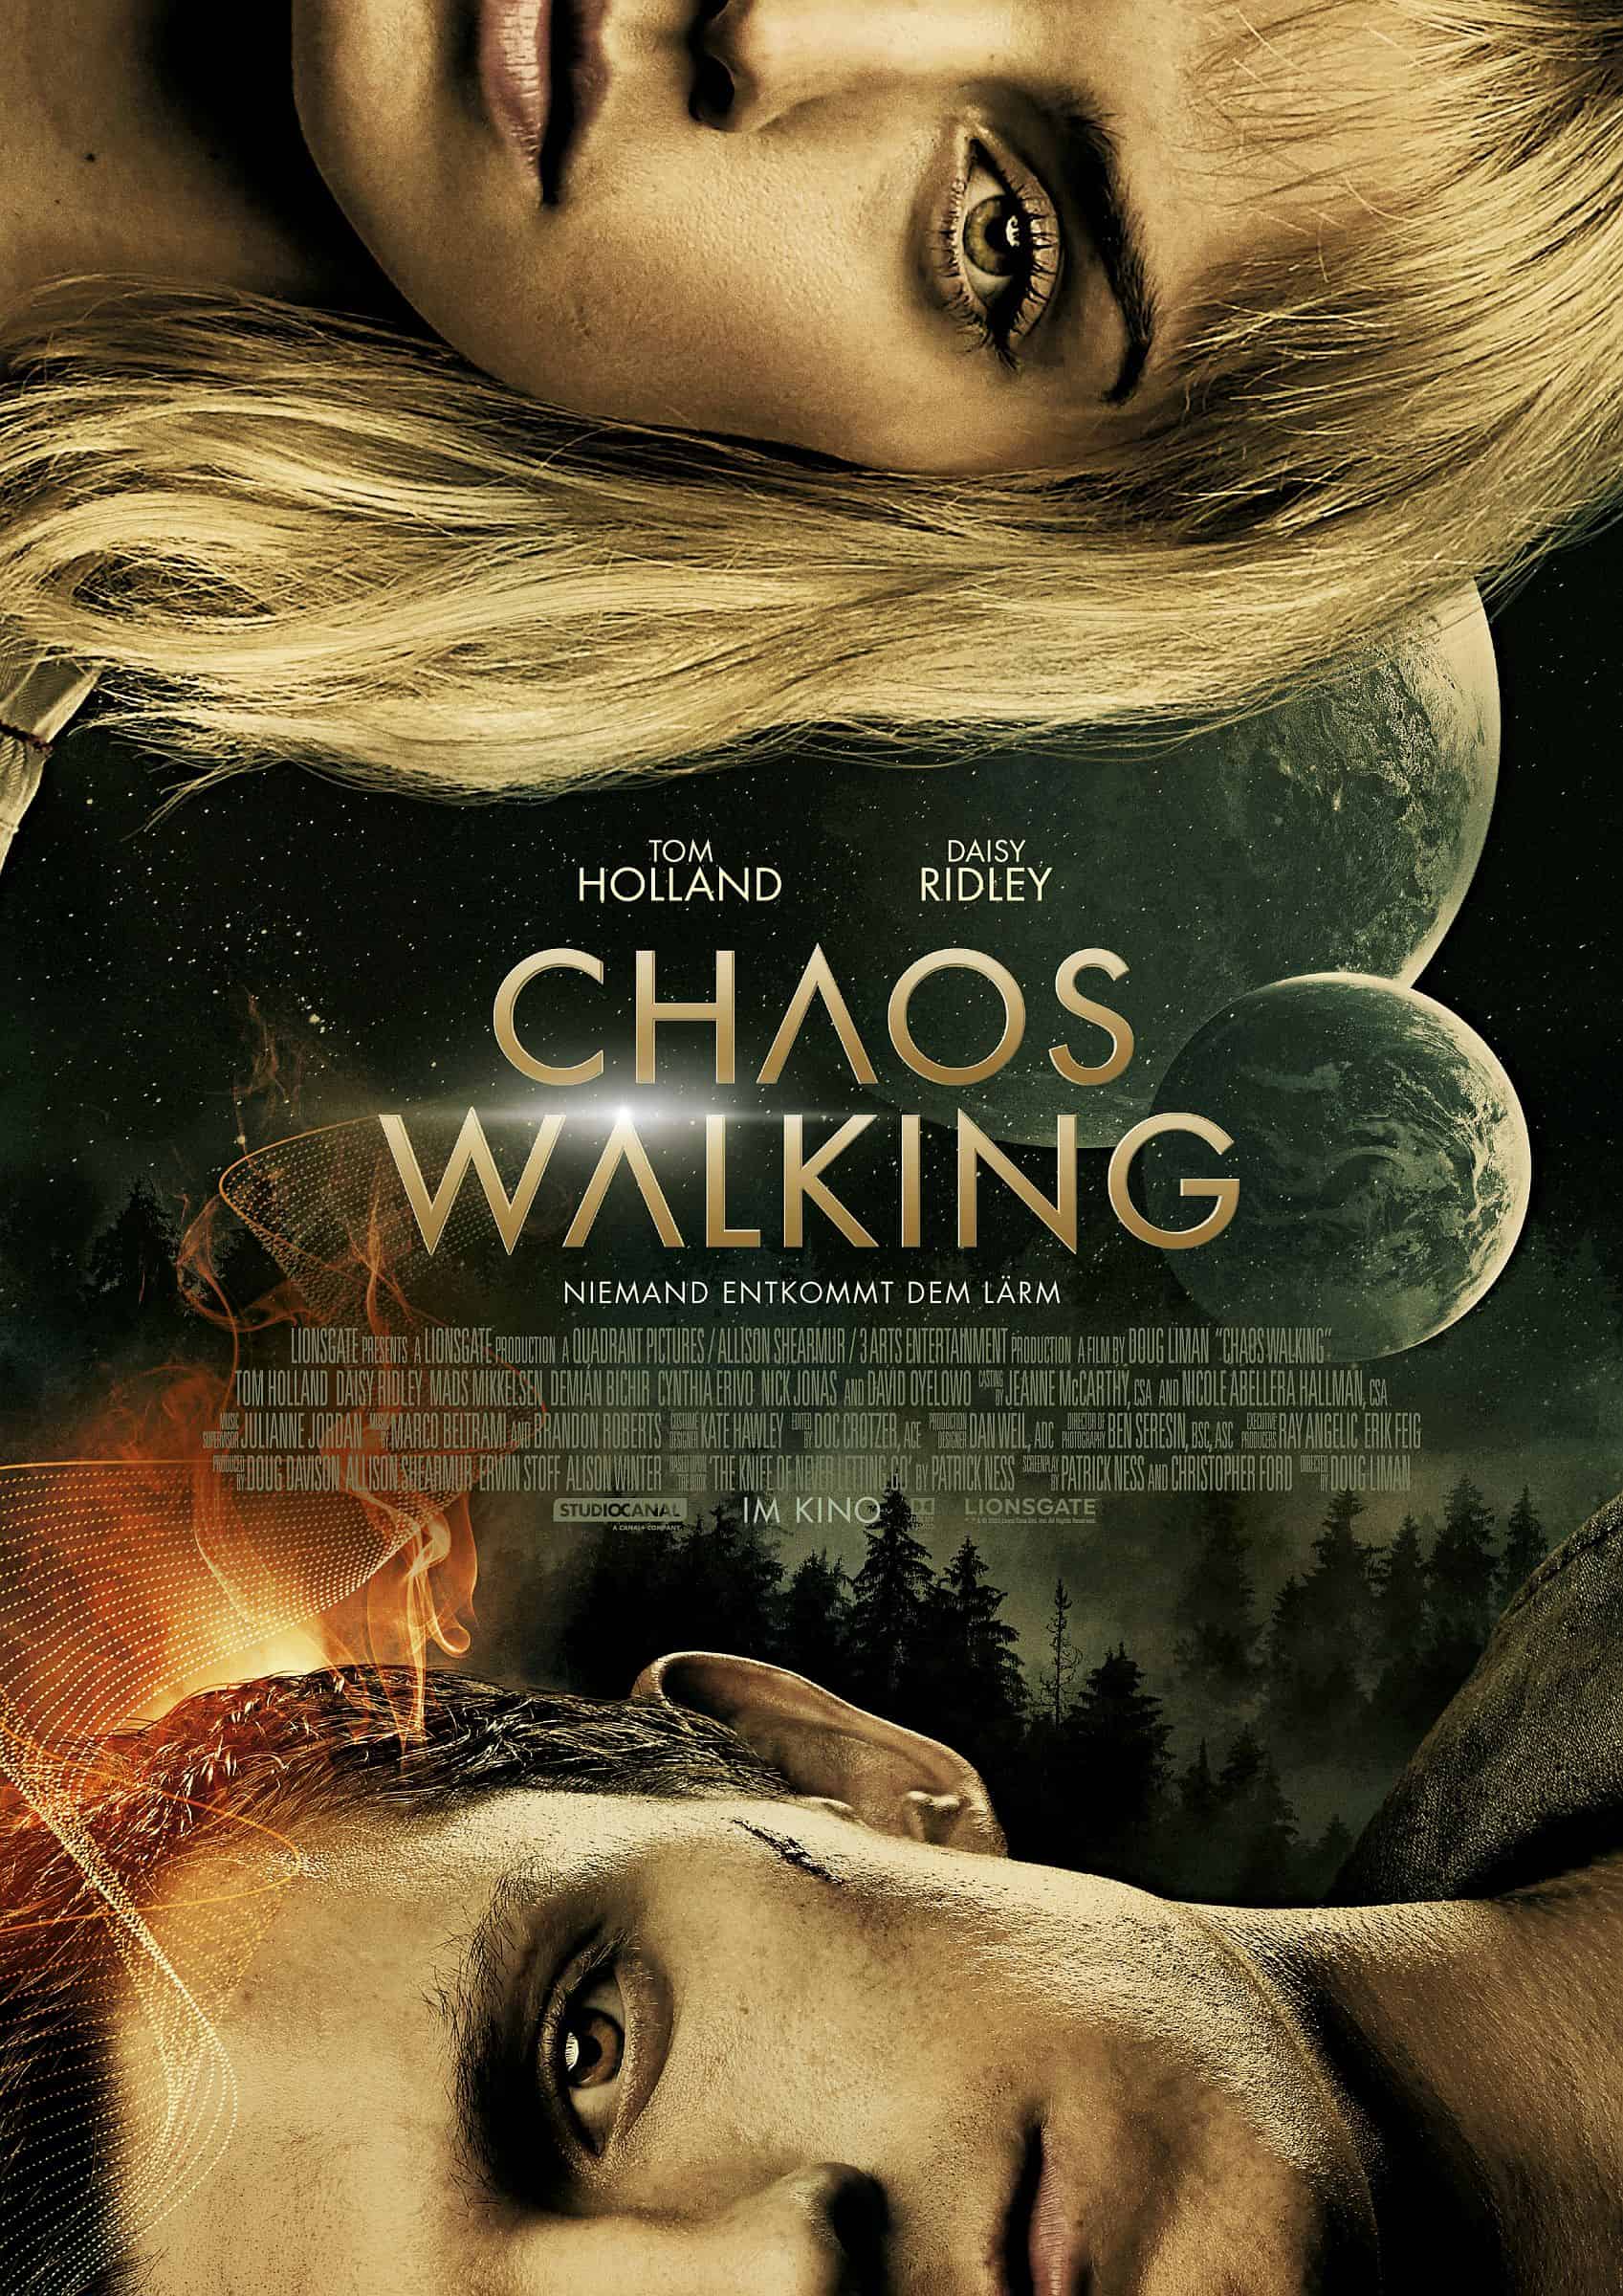 Tom Holland und Daisy Ridley auf einem Plakat zum Film Chaos Walking